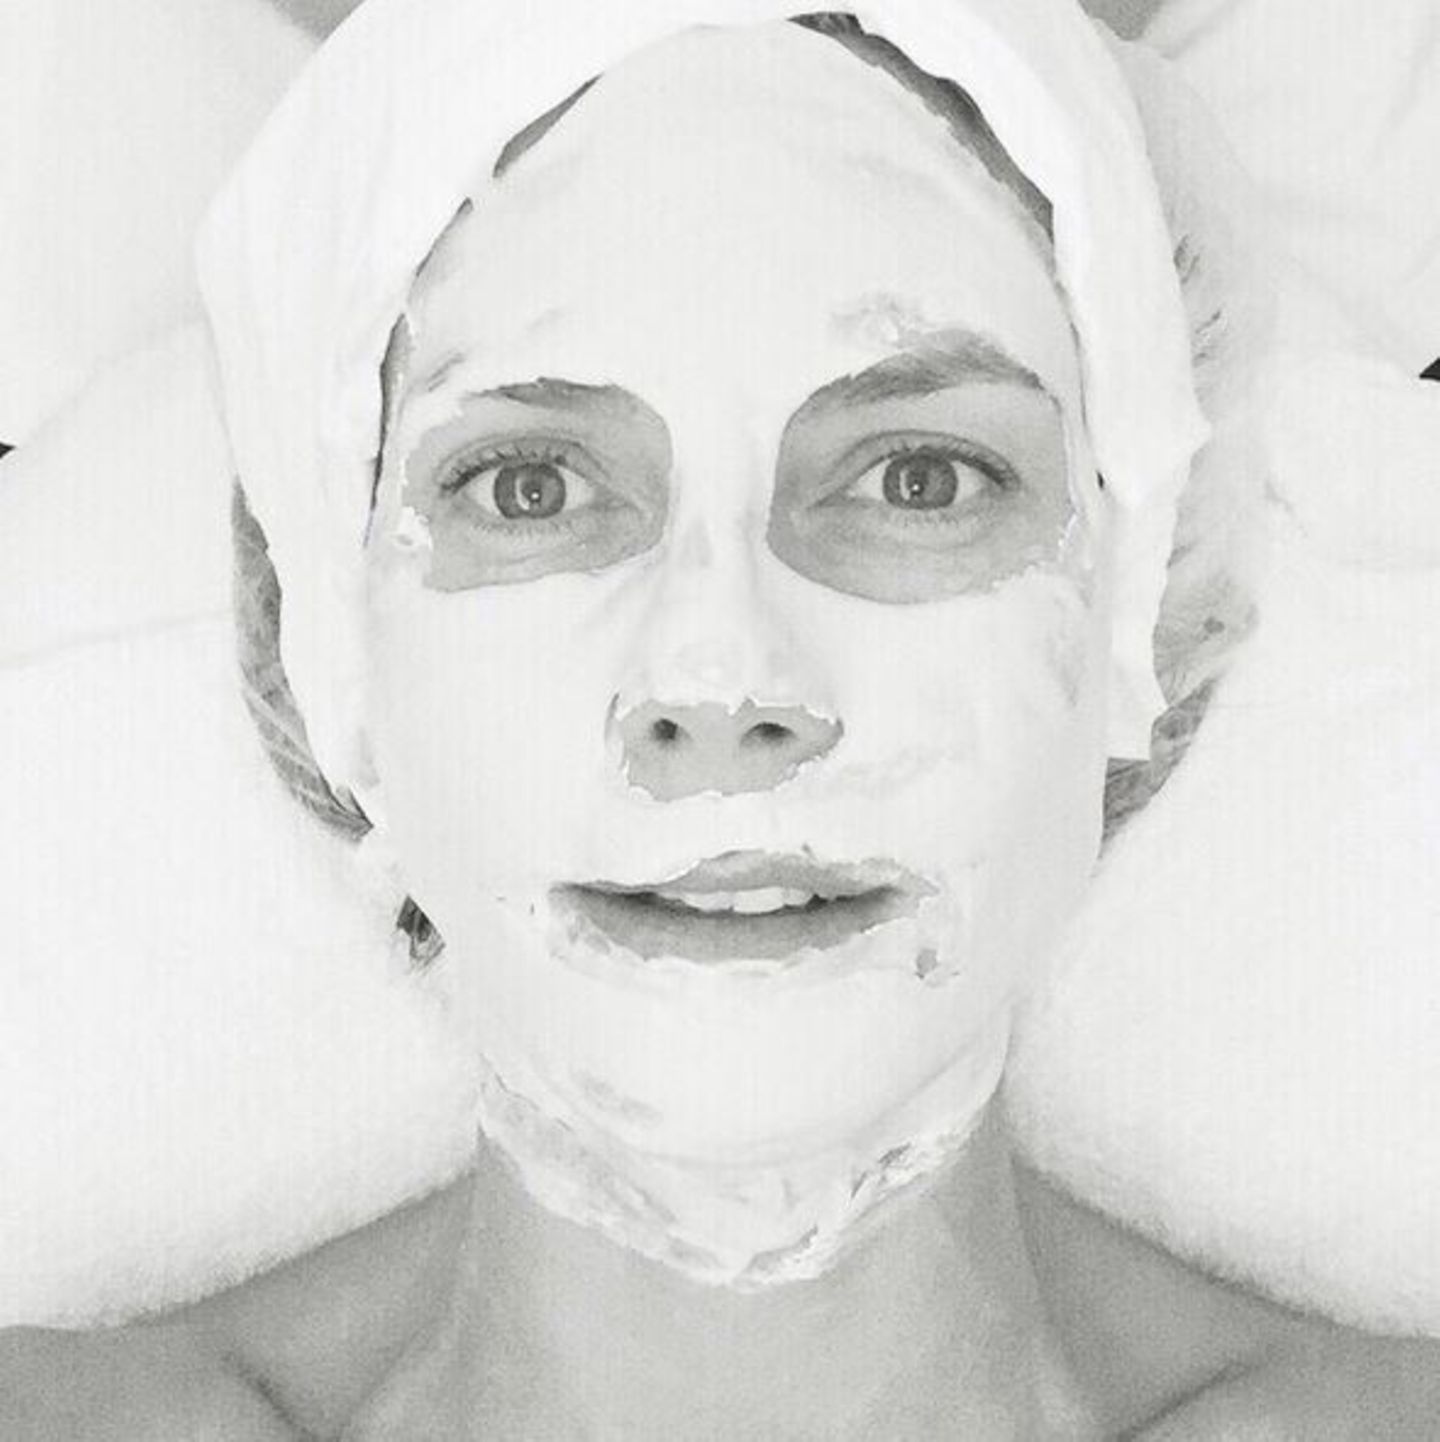 Heidi Klum gönnt sich eine Auszeit und macht es sich mit einer Gesichtsmaske im Bett gemütlich.